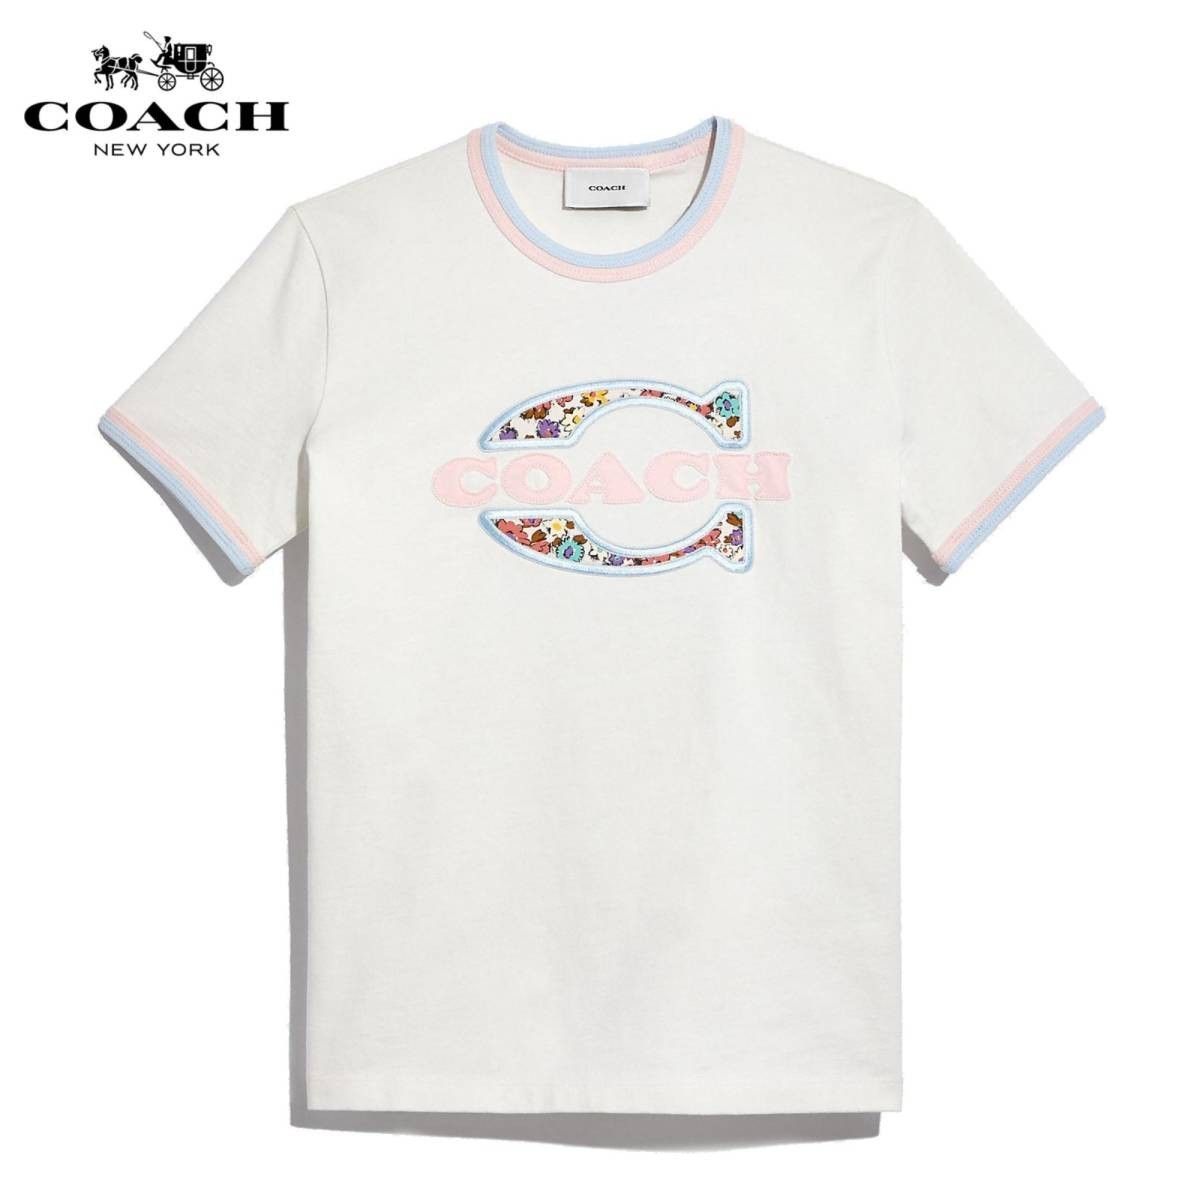 【COACH★C4968】コーチ 百貨店商品♪ レディースウェアトップス半袖Tシャツ 新品タグ付き